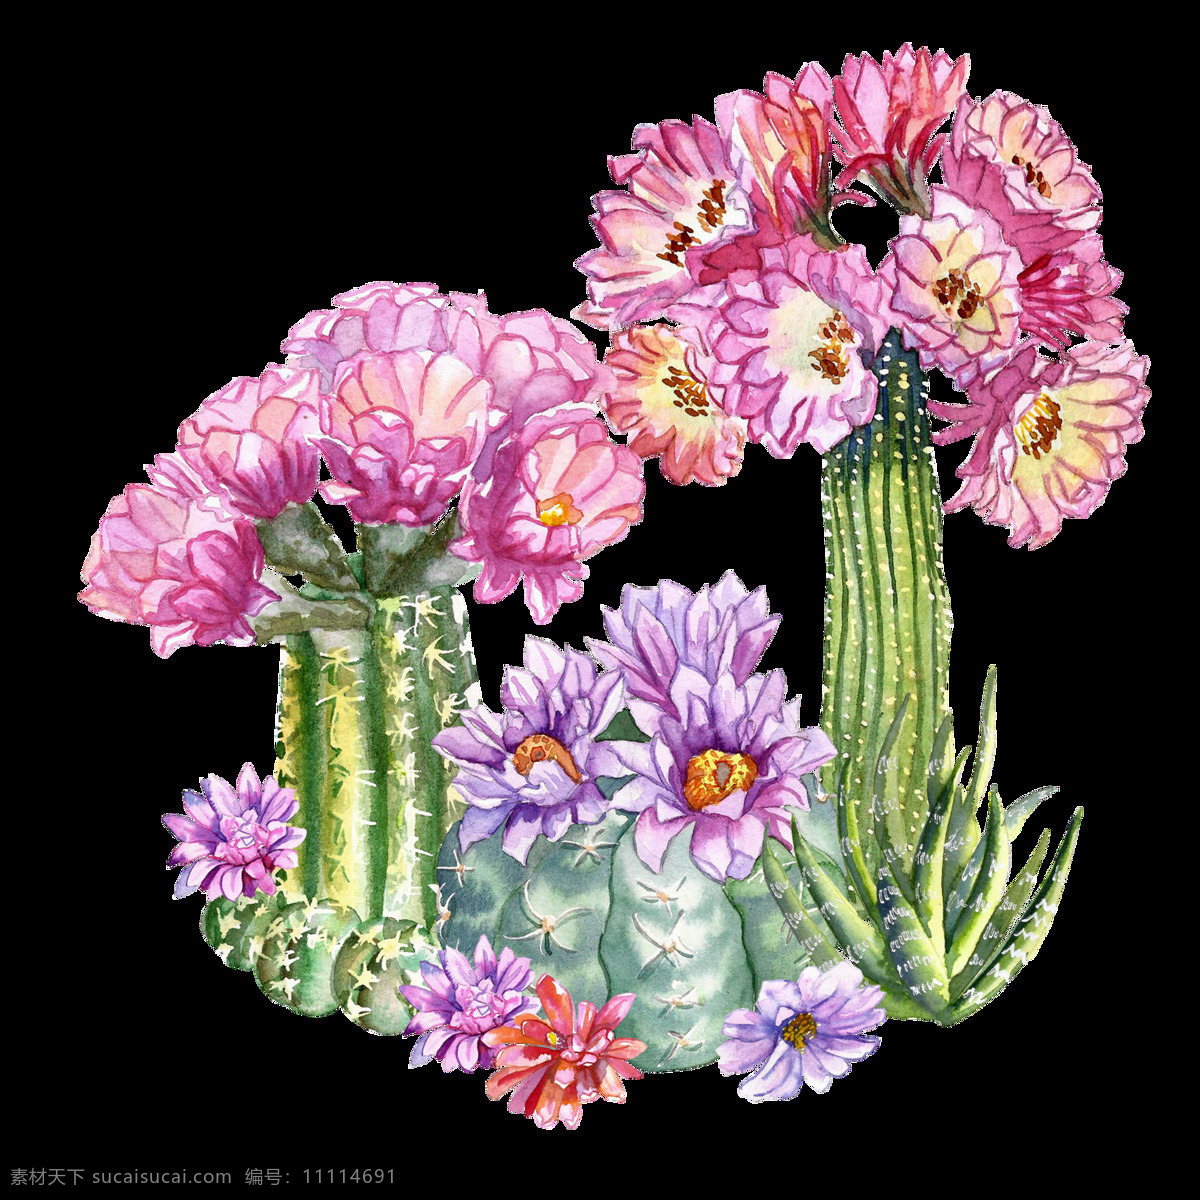 热带 花卉 透明 装饰 设计素材 背景素材